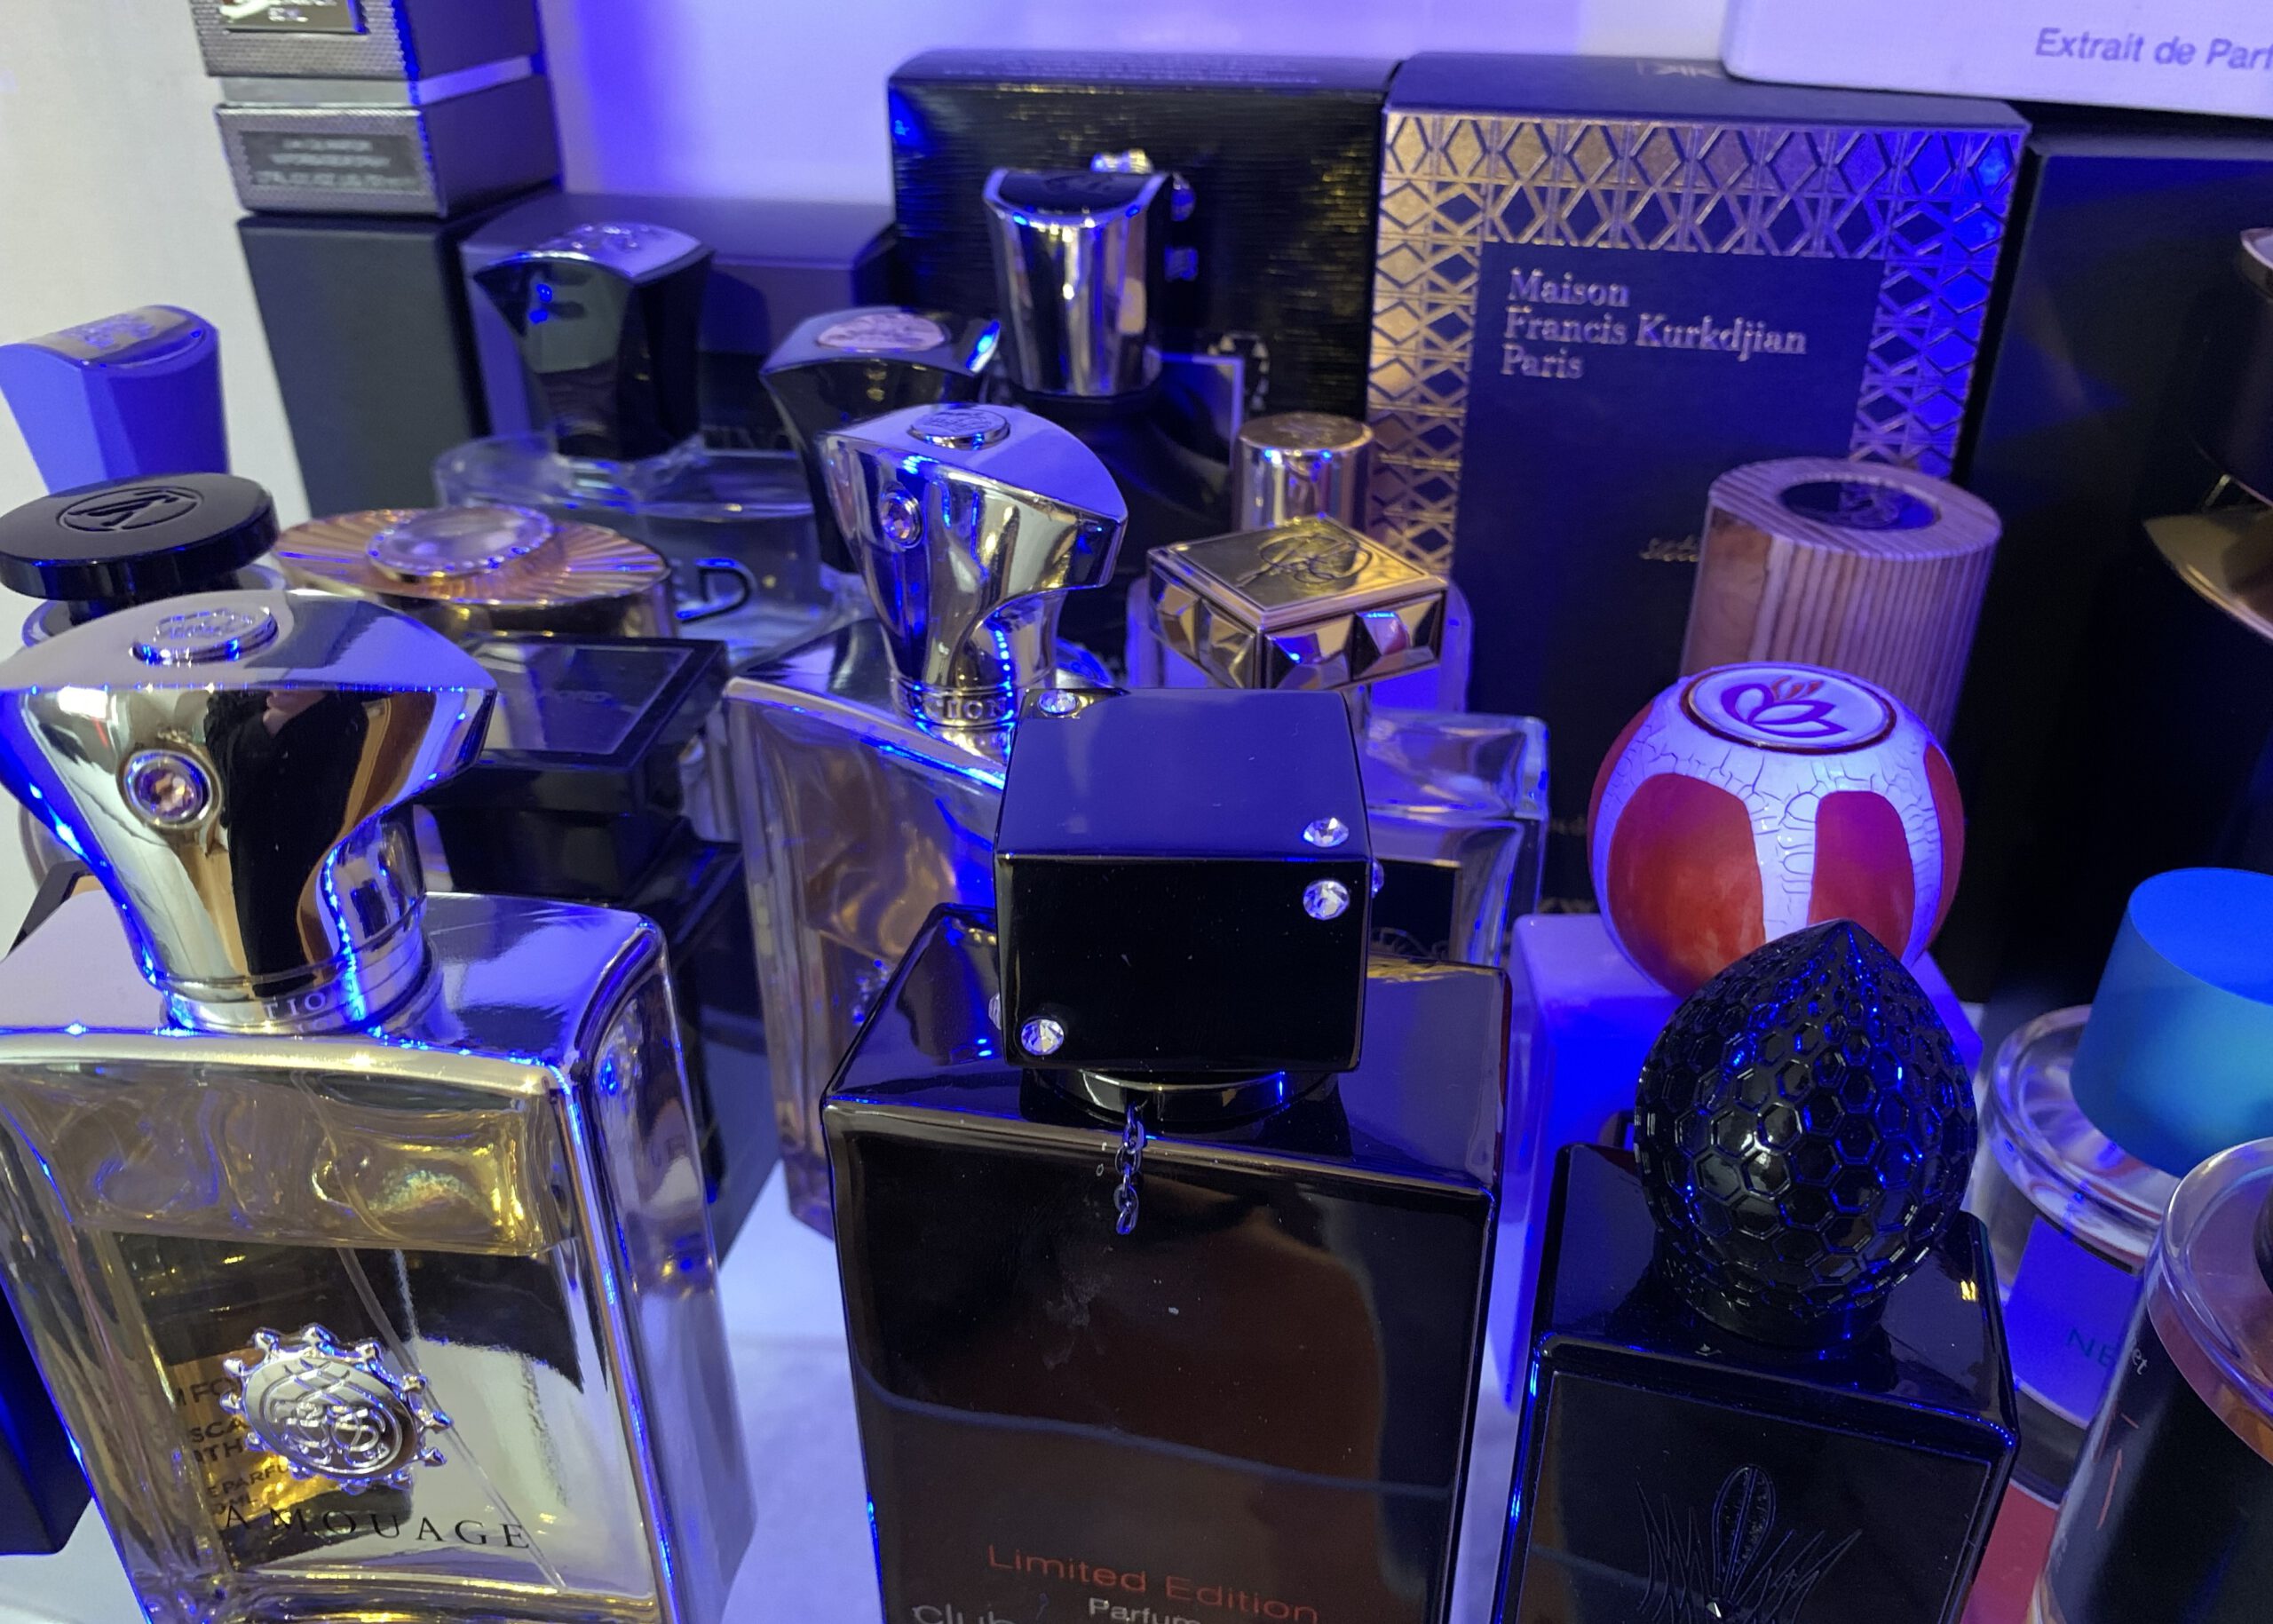 Viele verschiedene Parfümflakons mit unterschiedlichen Deckeln, in bläuliches Licht getaucht. Im Hintergrund die Verpackung einiger Duftfläschchen.